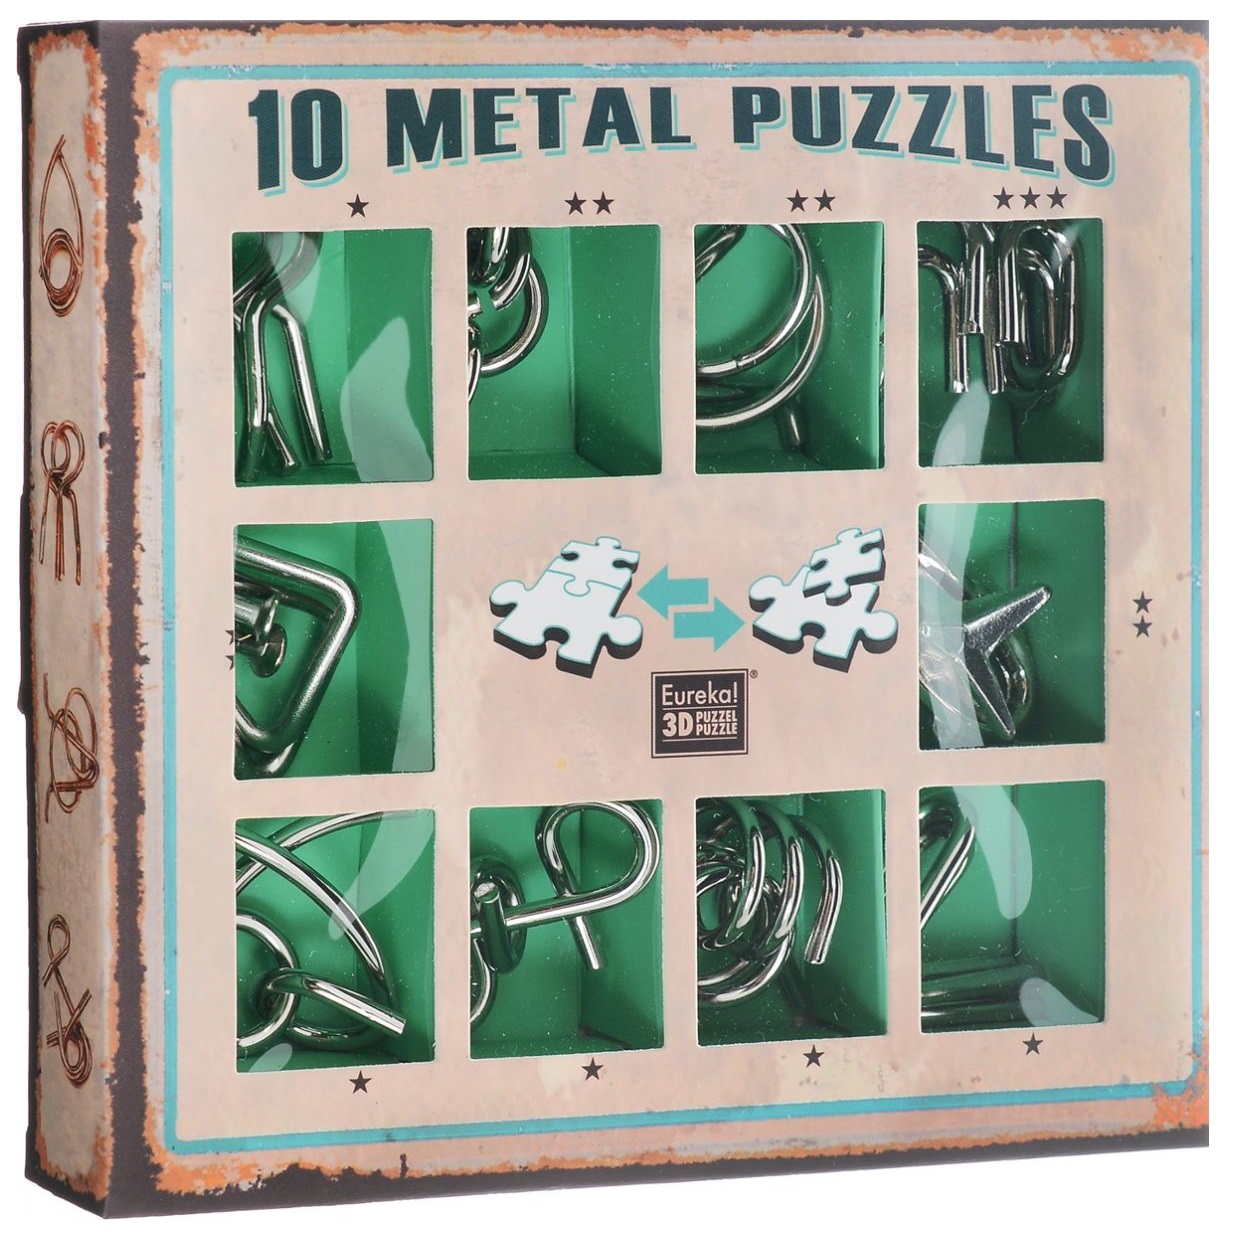 Головоломка Eureka 3D Puzzle зеленый металлический 10 шт. 473357 головоломка eureka карибский секретный побег caribbean secret escape box